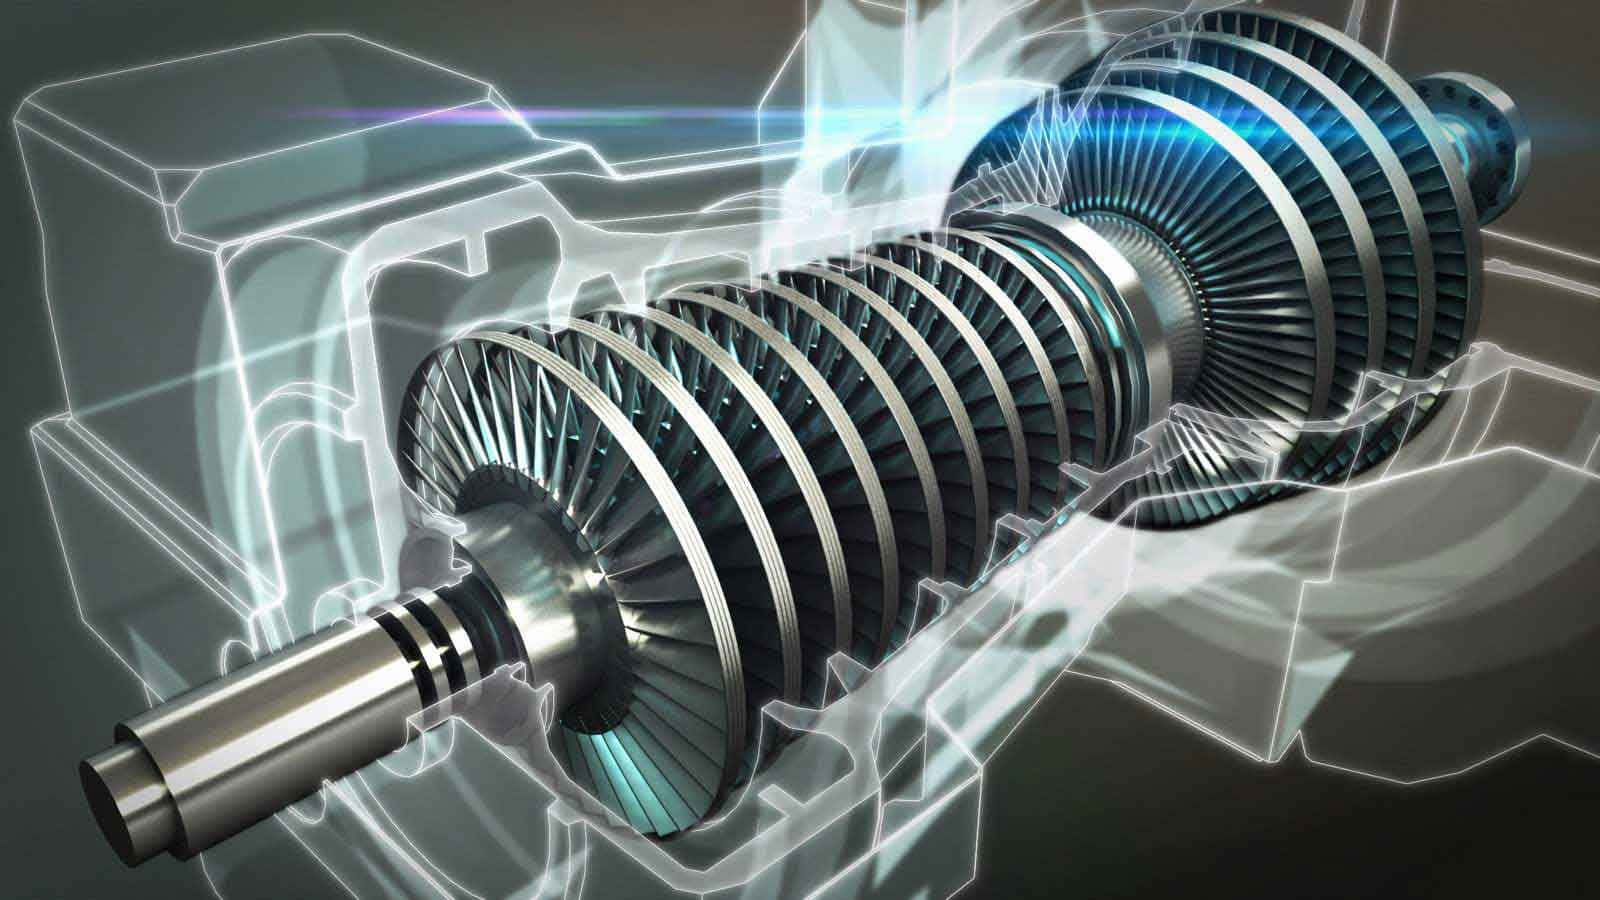 Unmotore A Turbina È Mostrato In Un'immagine In 3d Sfondo